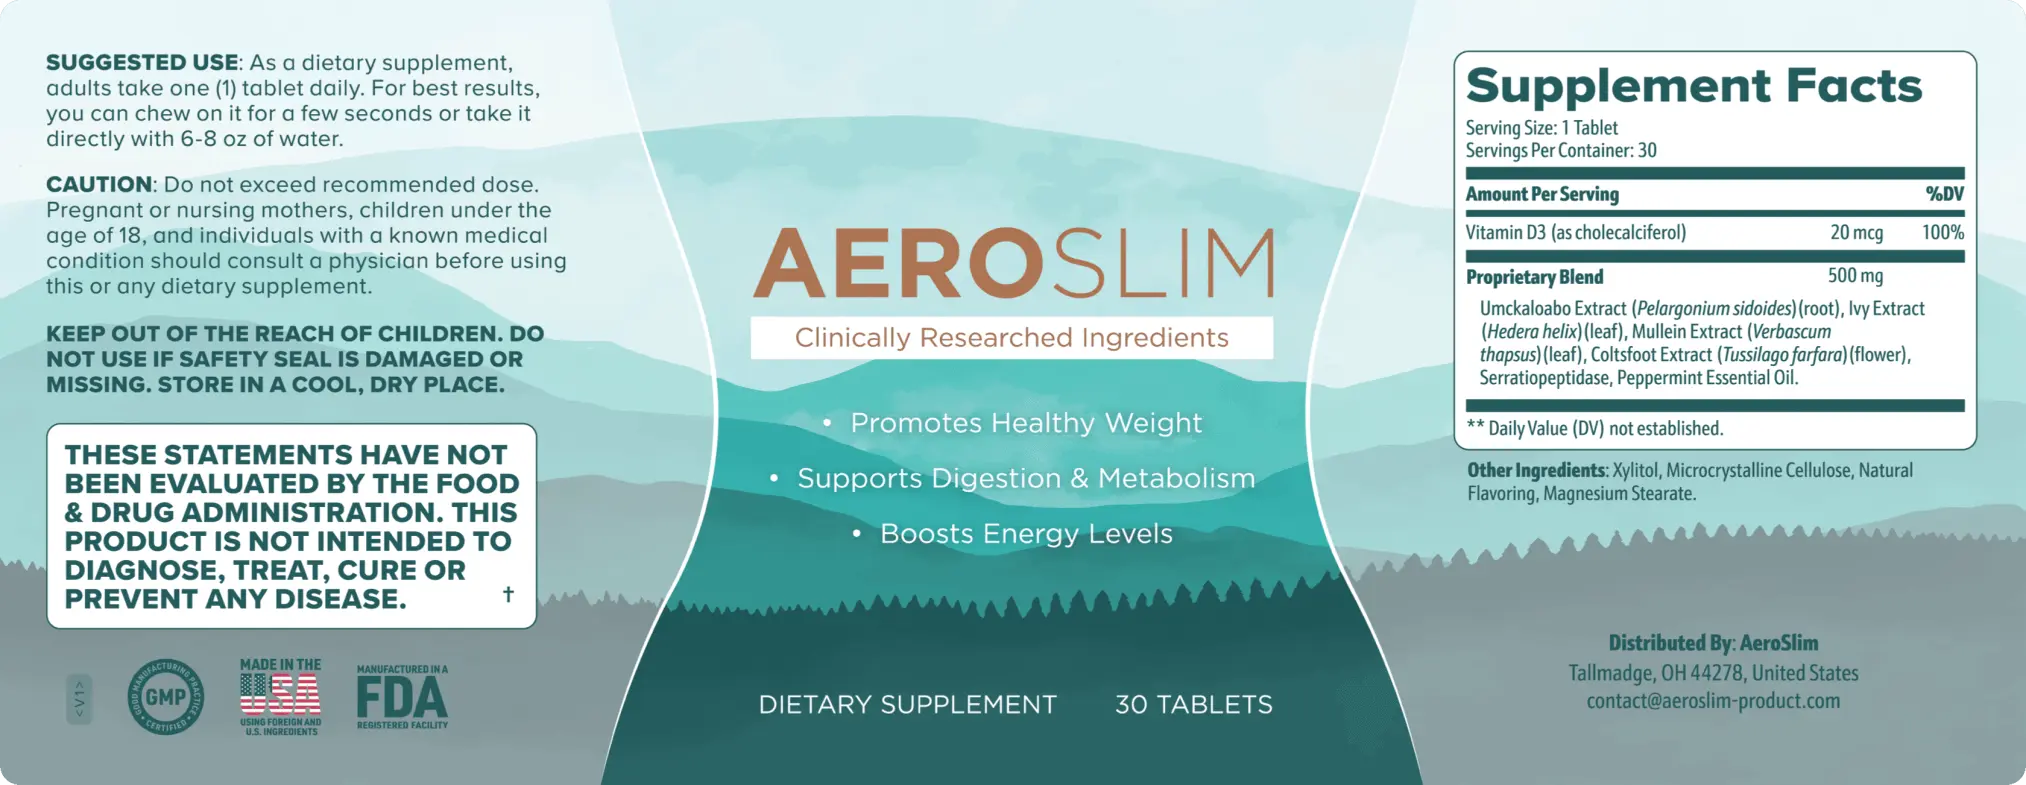 AeroSlim supplement fact